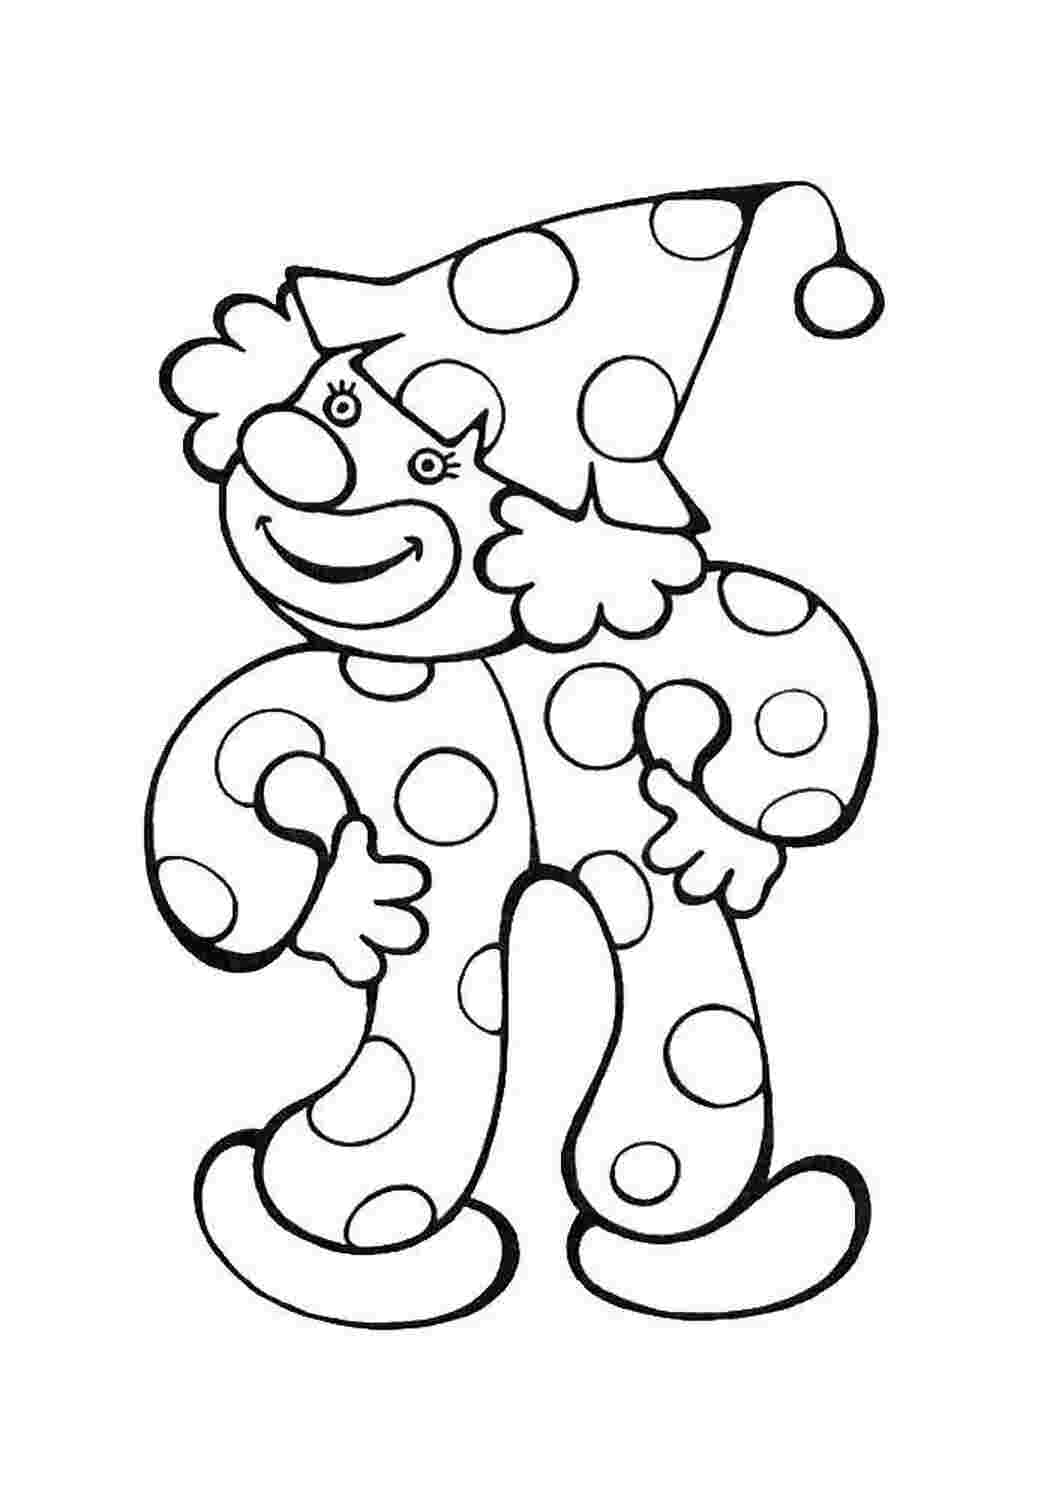 Клоуны раскраска для детей 5 лет. Клоун раскраска. Веселый клоун раскраска. Клоун раскраска для детей. Раскраска весёлый клоун для детей.